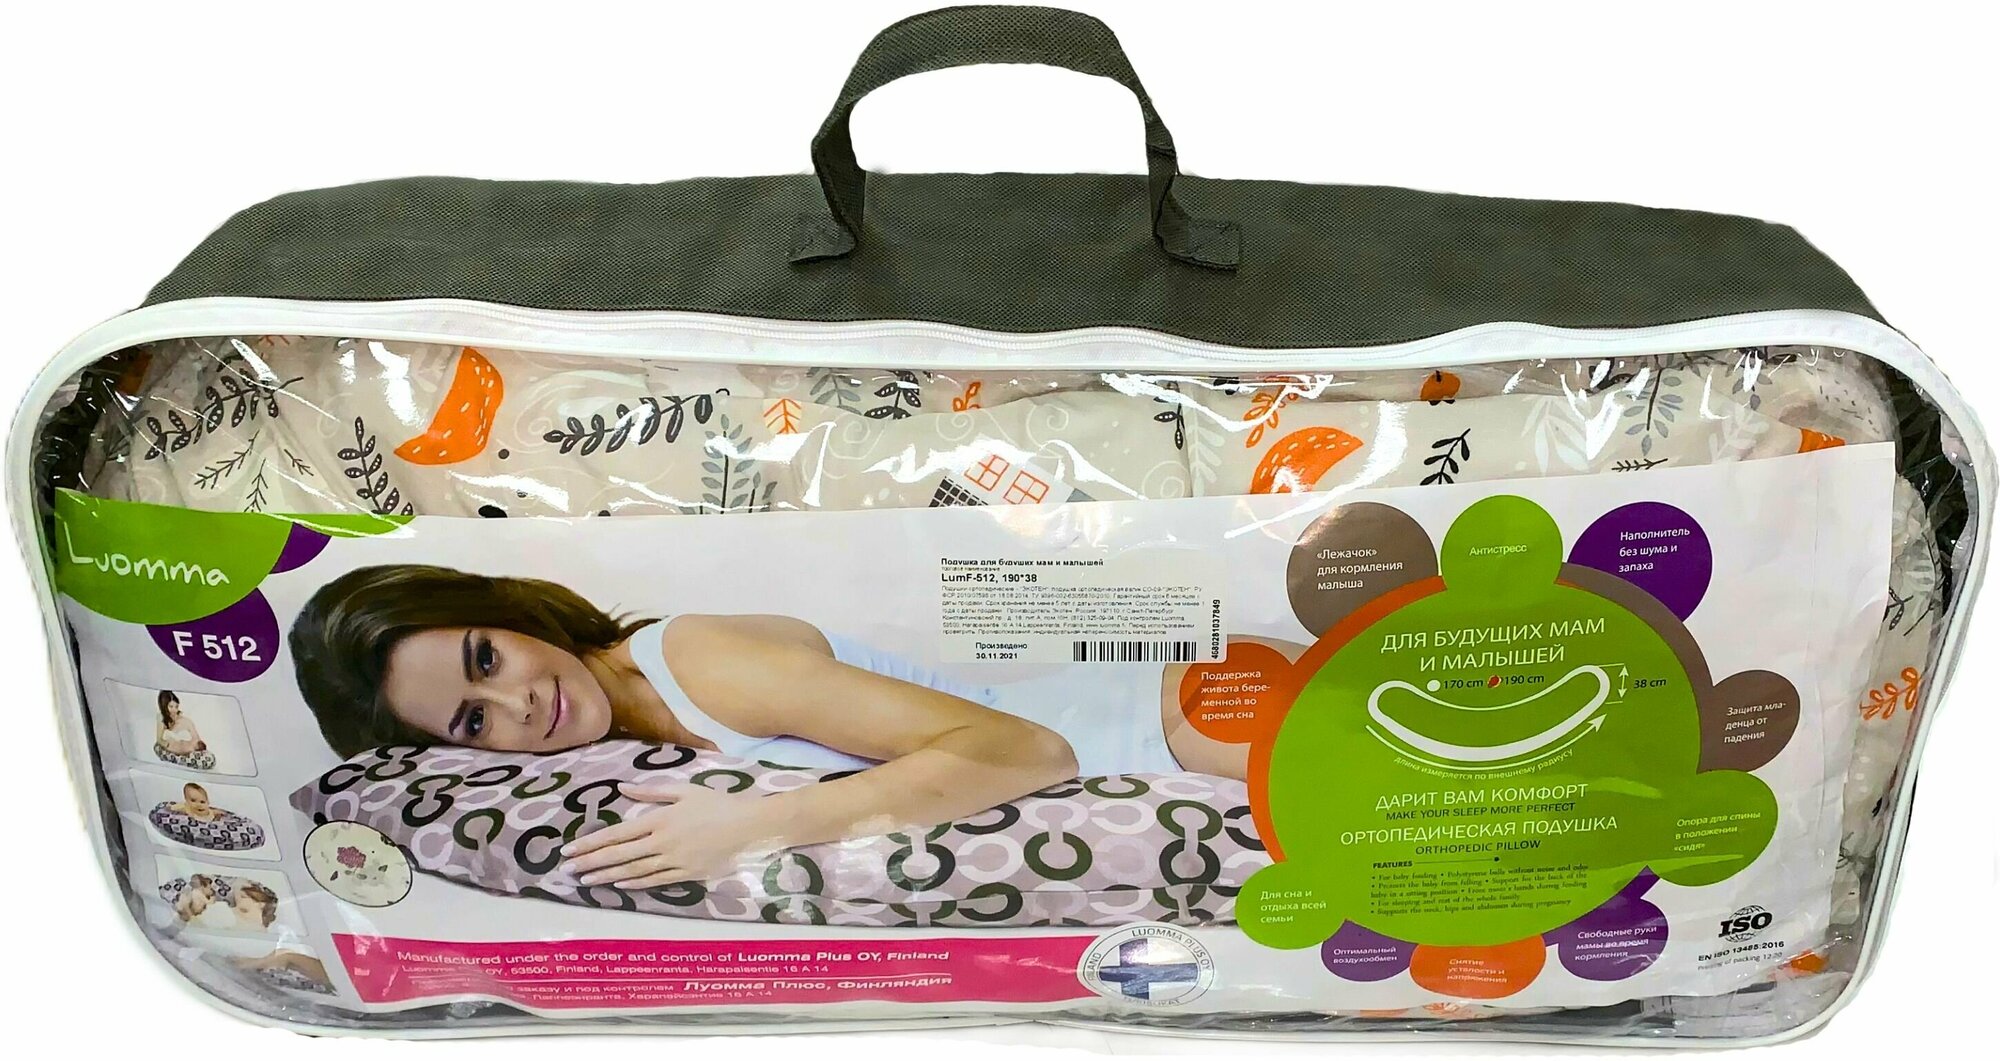 Подушка - Рогалик для беременных и кормящих женщин Luomma LumF-512, 190x38 см